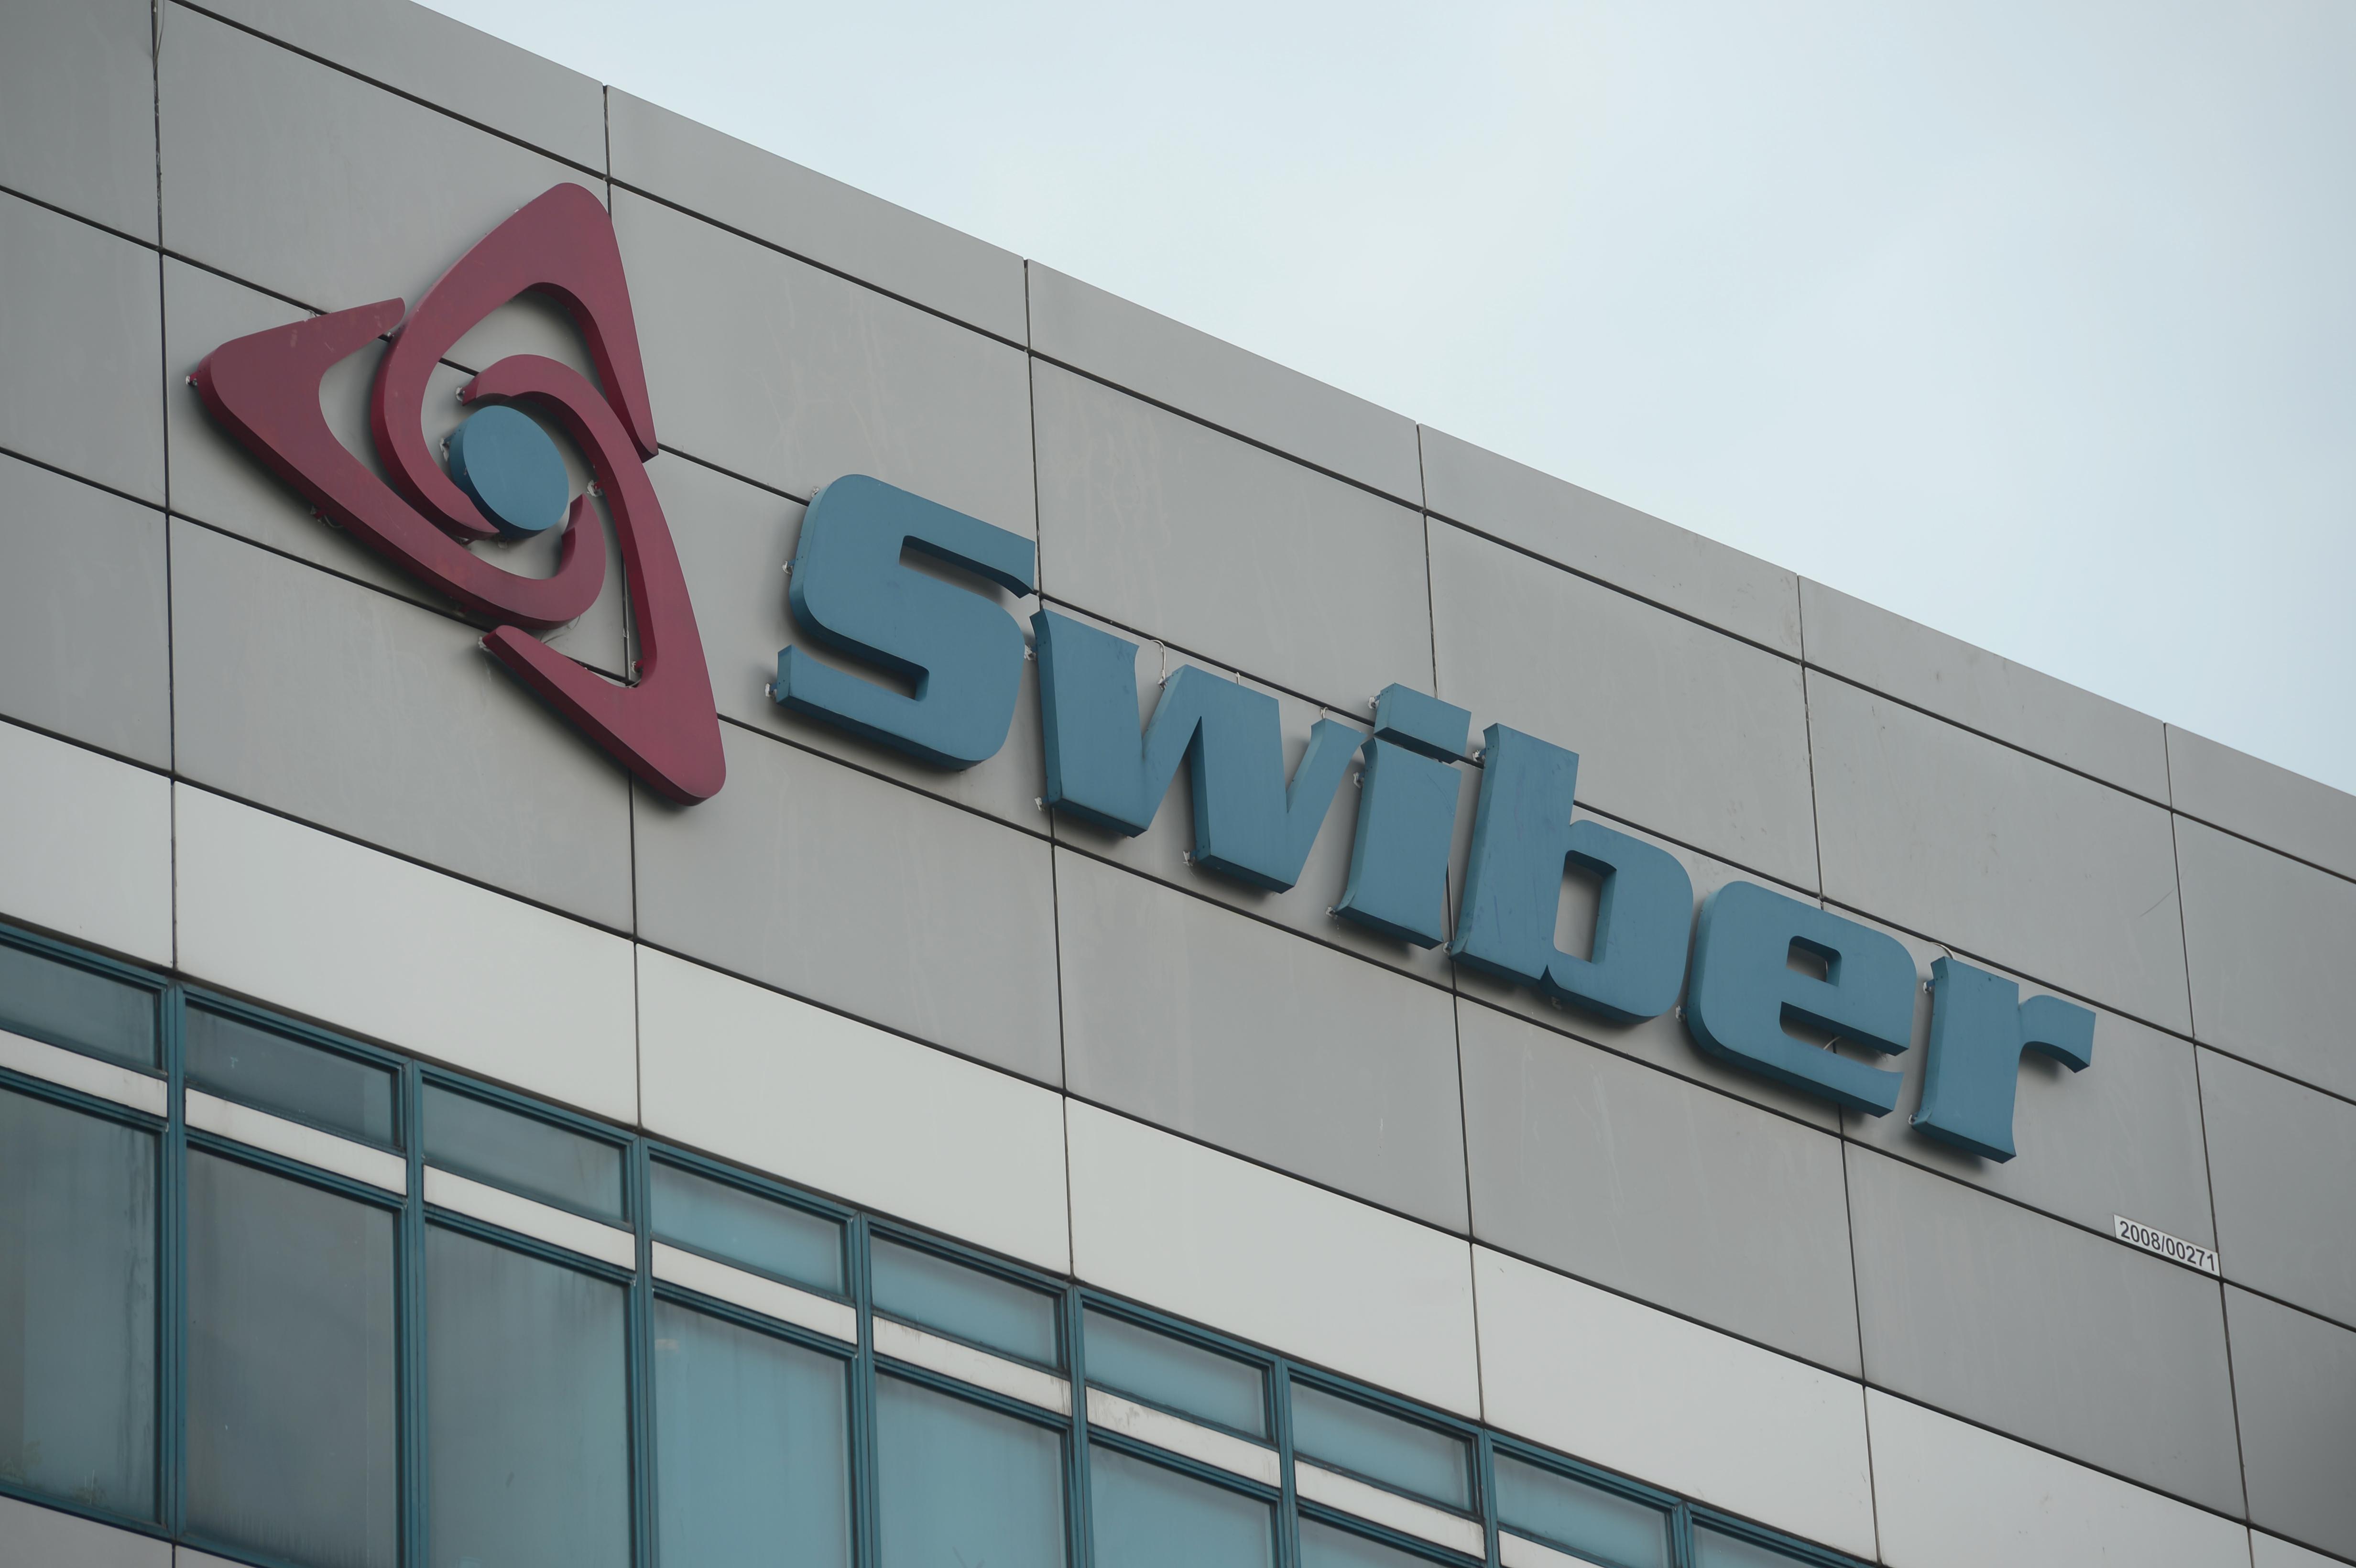 Swiber-Gründer verhängte Geldstrafe von 100.000 S$ wegen falscher Projektankündigung und Auflistung von Regelverstößen